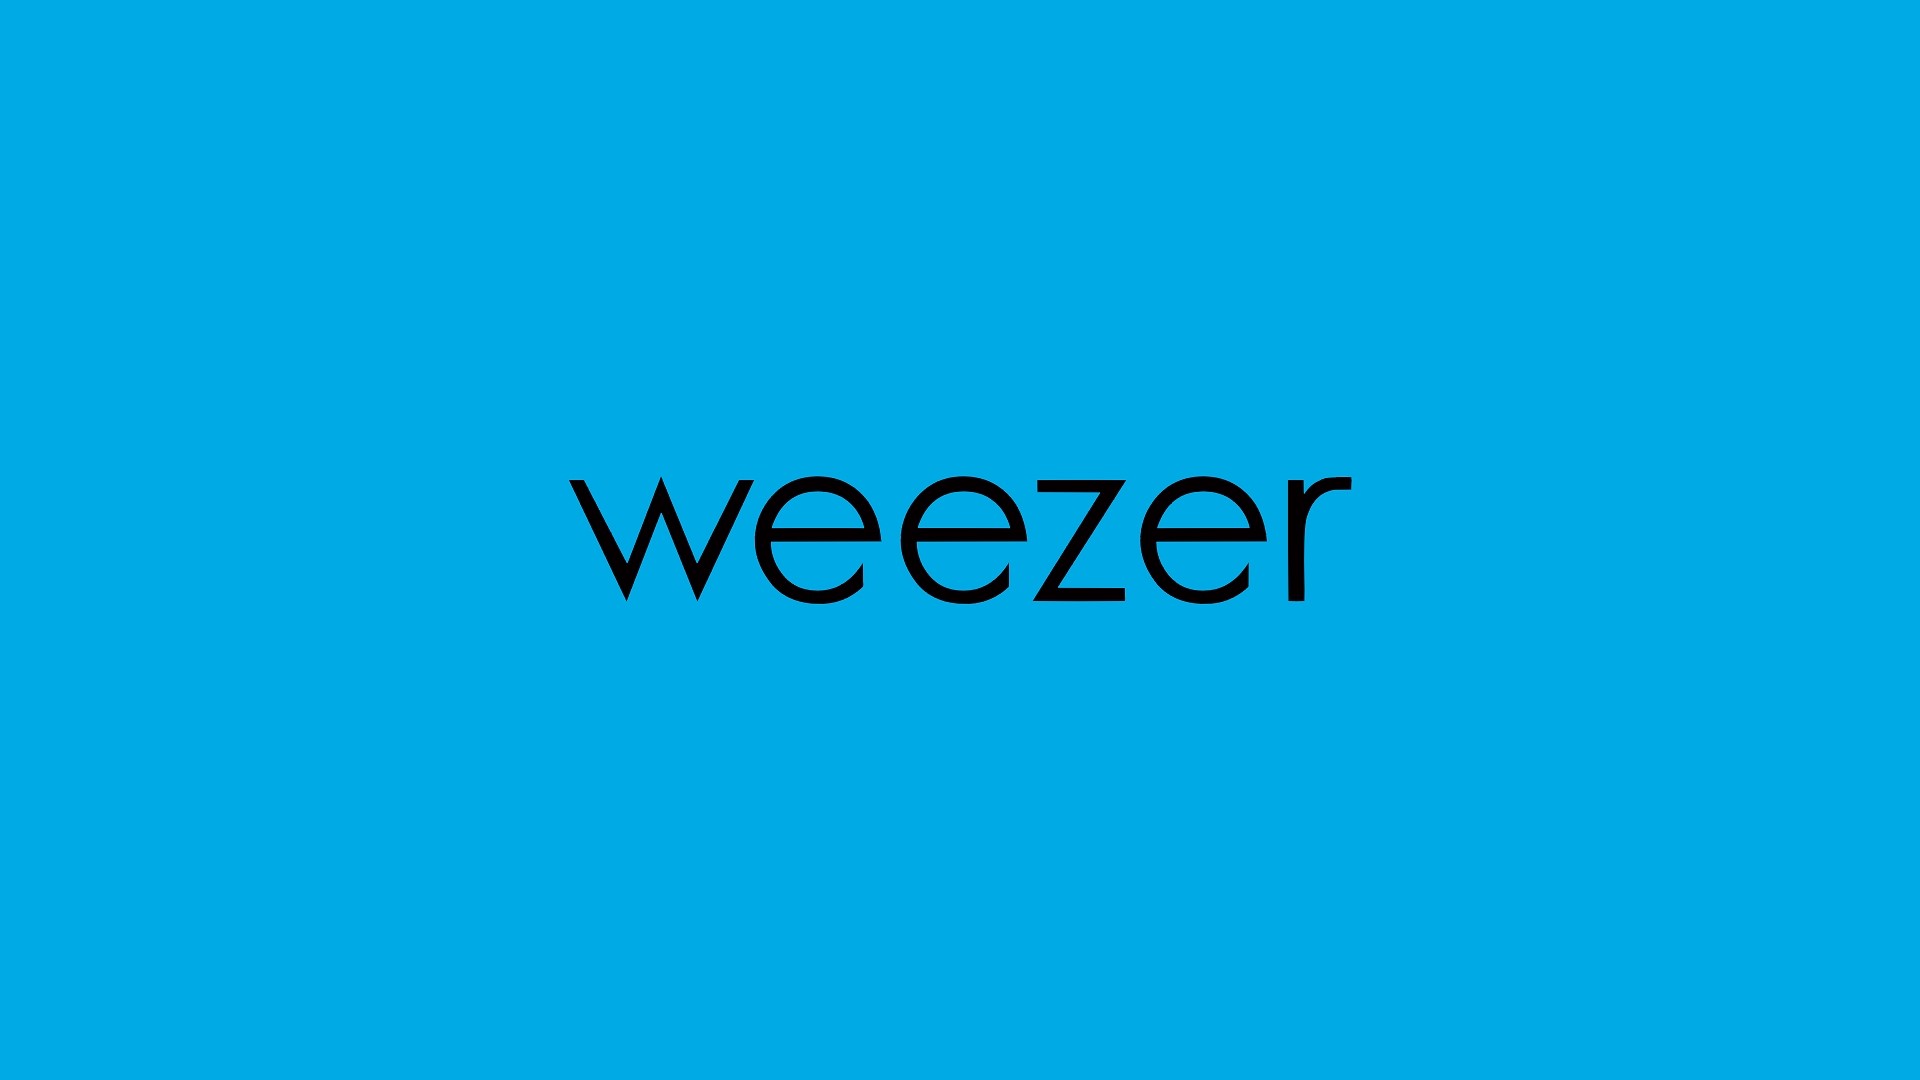 Weezer Wallpaper Image